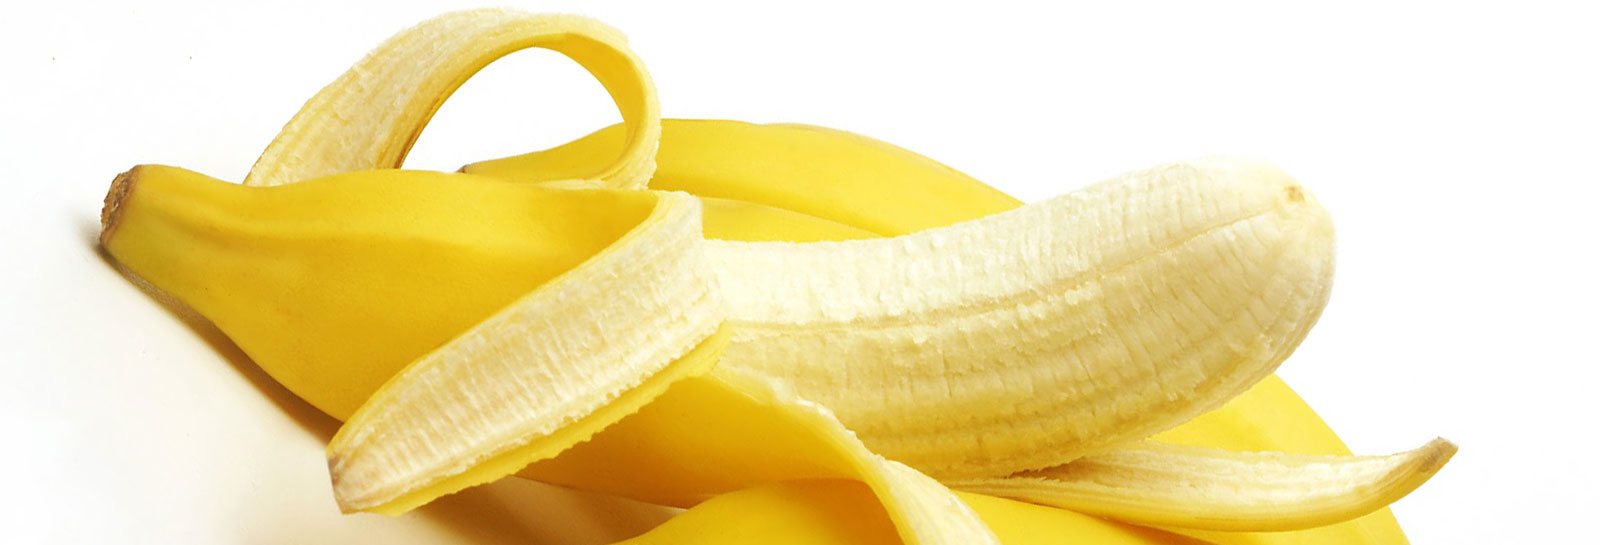 Банан. Топ-5 самых богатых витаминами фруктов и ягод